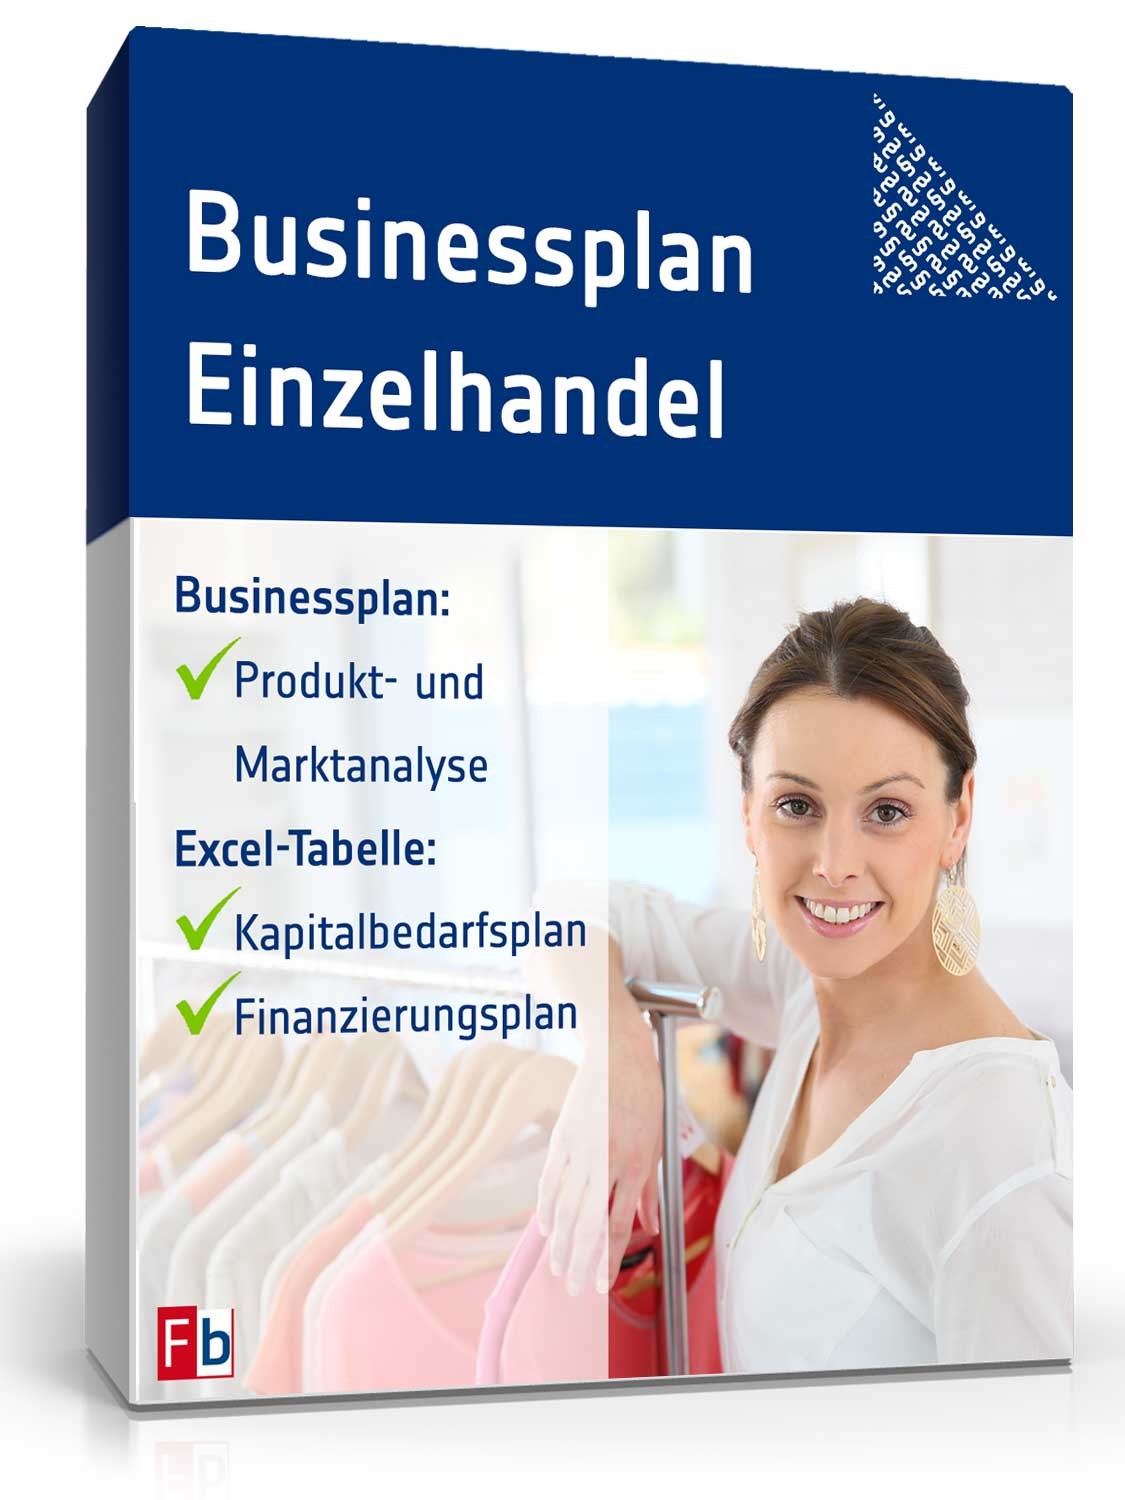 Hauptbild des Produkts: Businessplan Einzelhandel